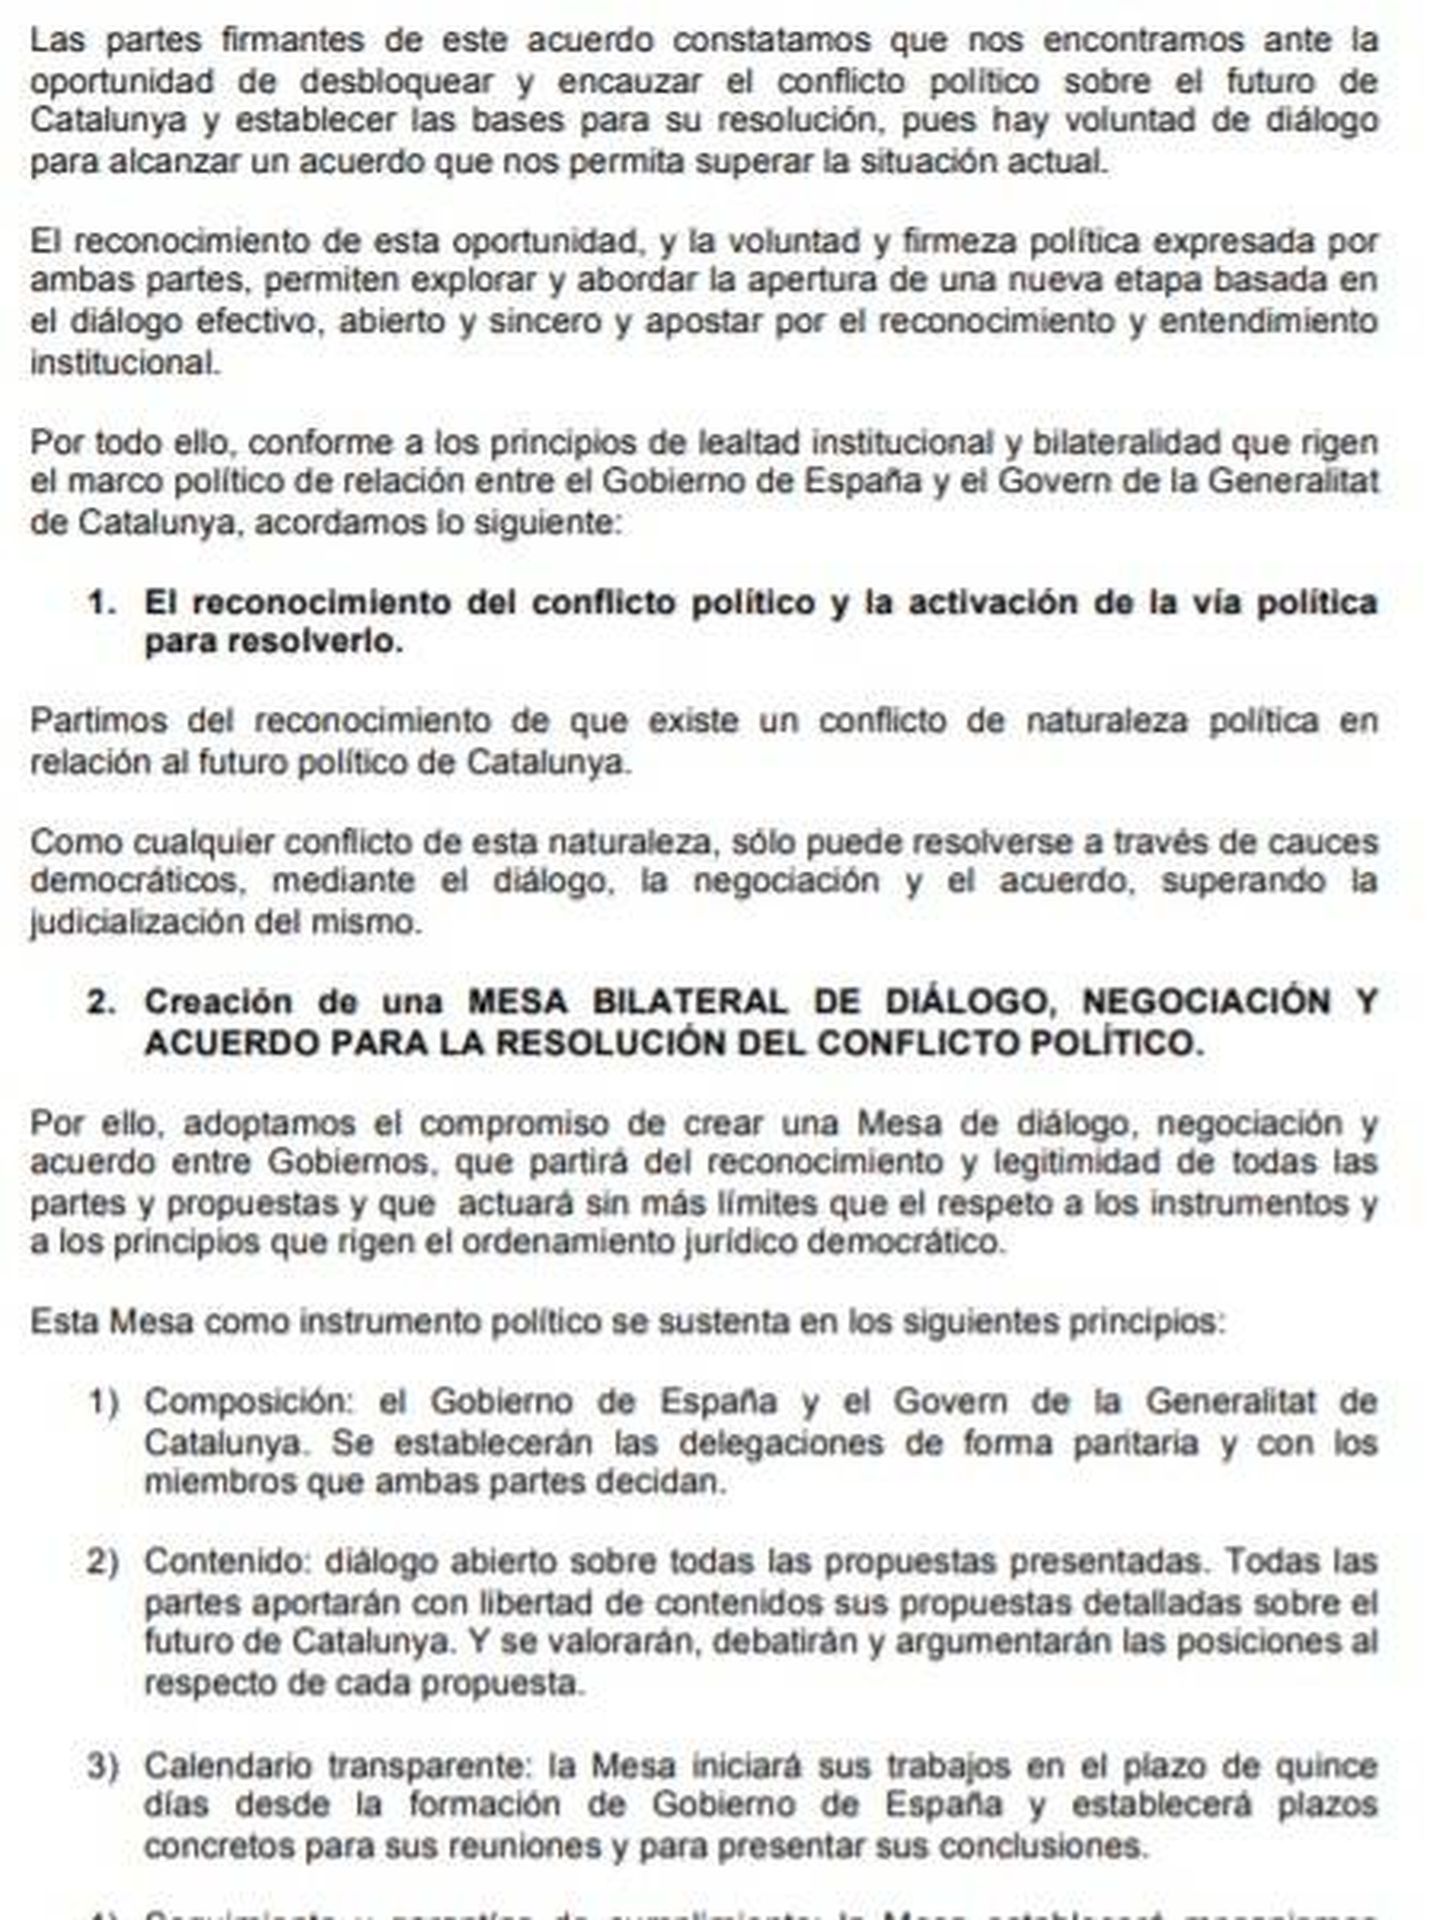 Consulte aquí en PDF el acuerdo entre PSOE y ERC para facilitar la investidura de Pedro Sánchez. 